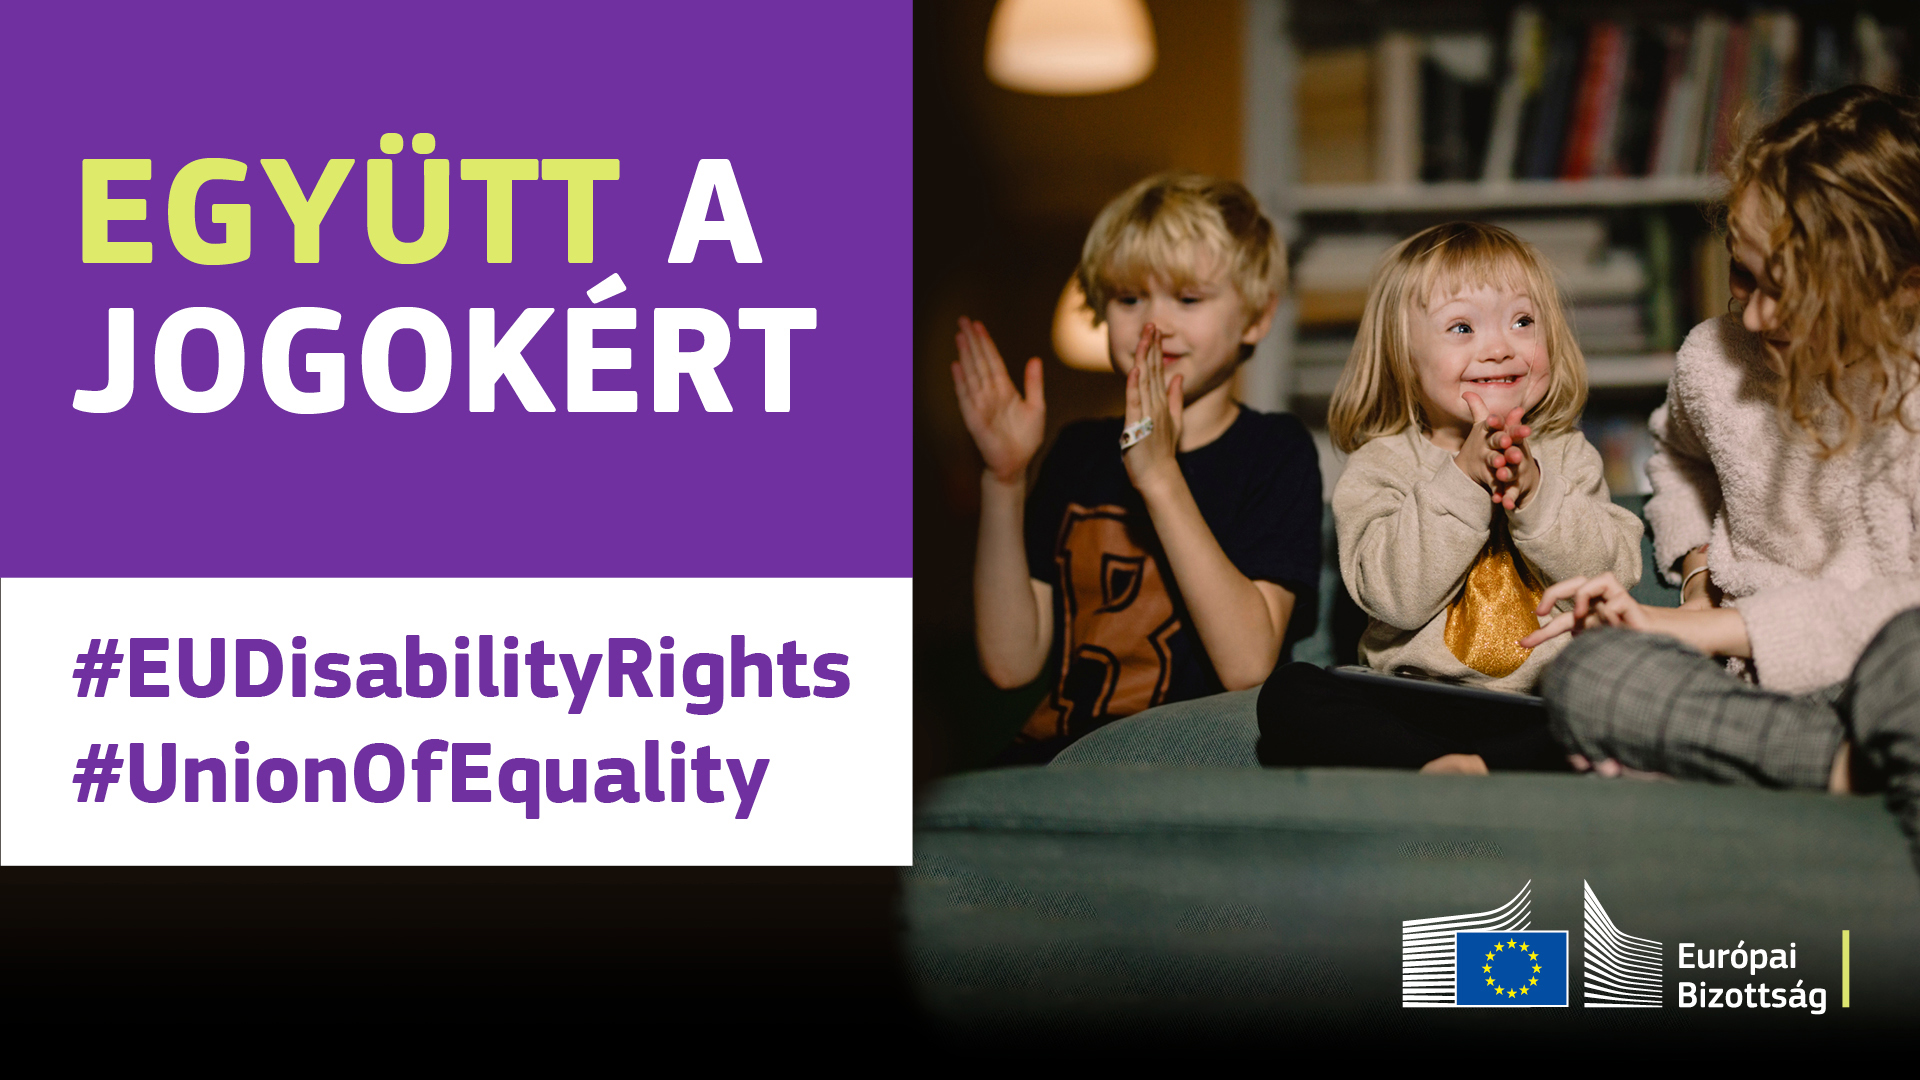 Három gyermek vidáman játszik együtt. Egyikük Down-szindrómás. A kép felirata: együtt a jogokért, #EUDisabilityRights, #UnionOfEquality.